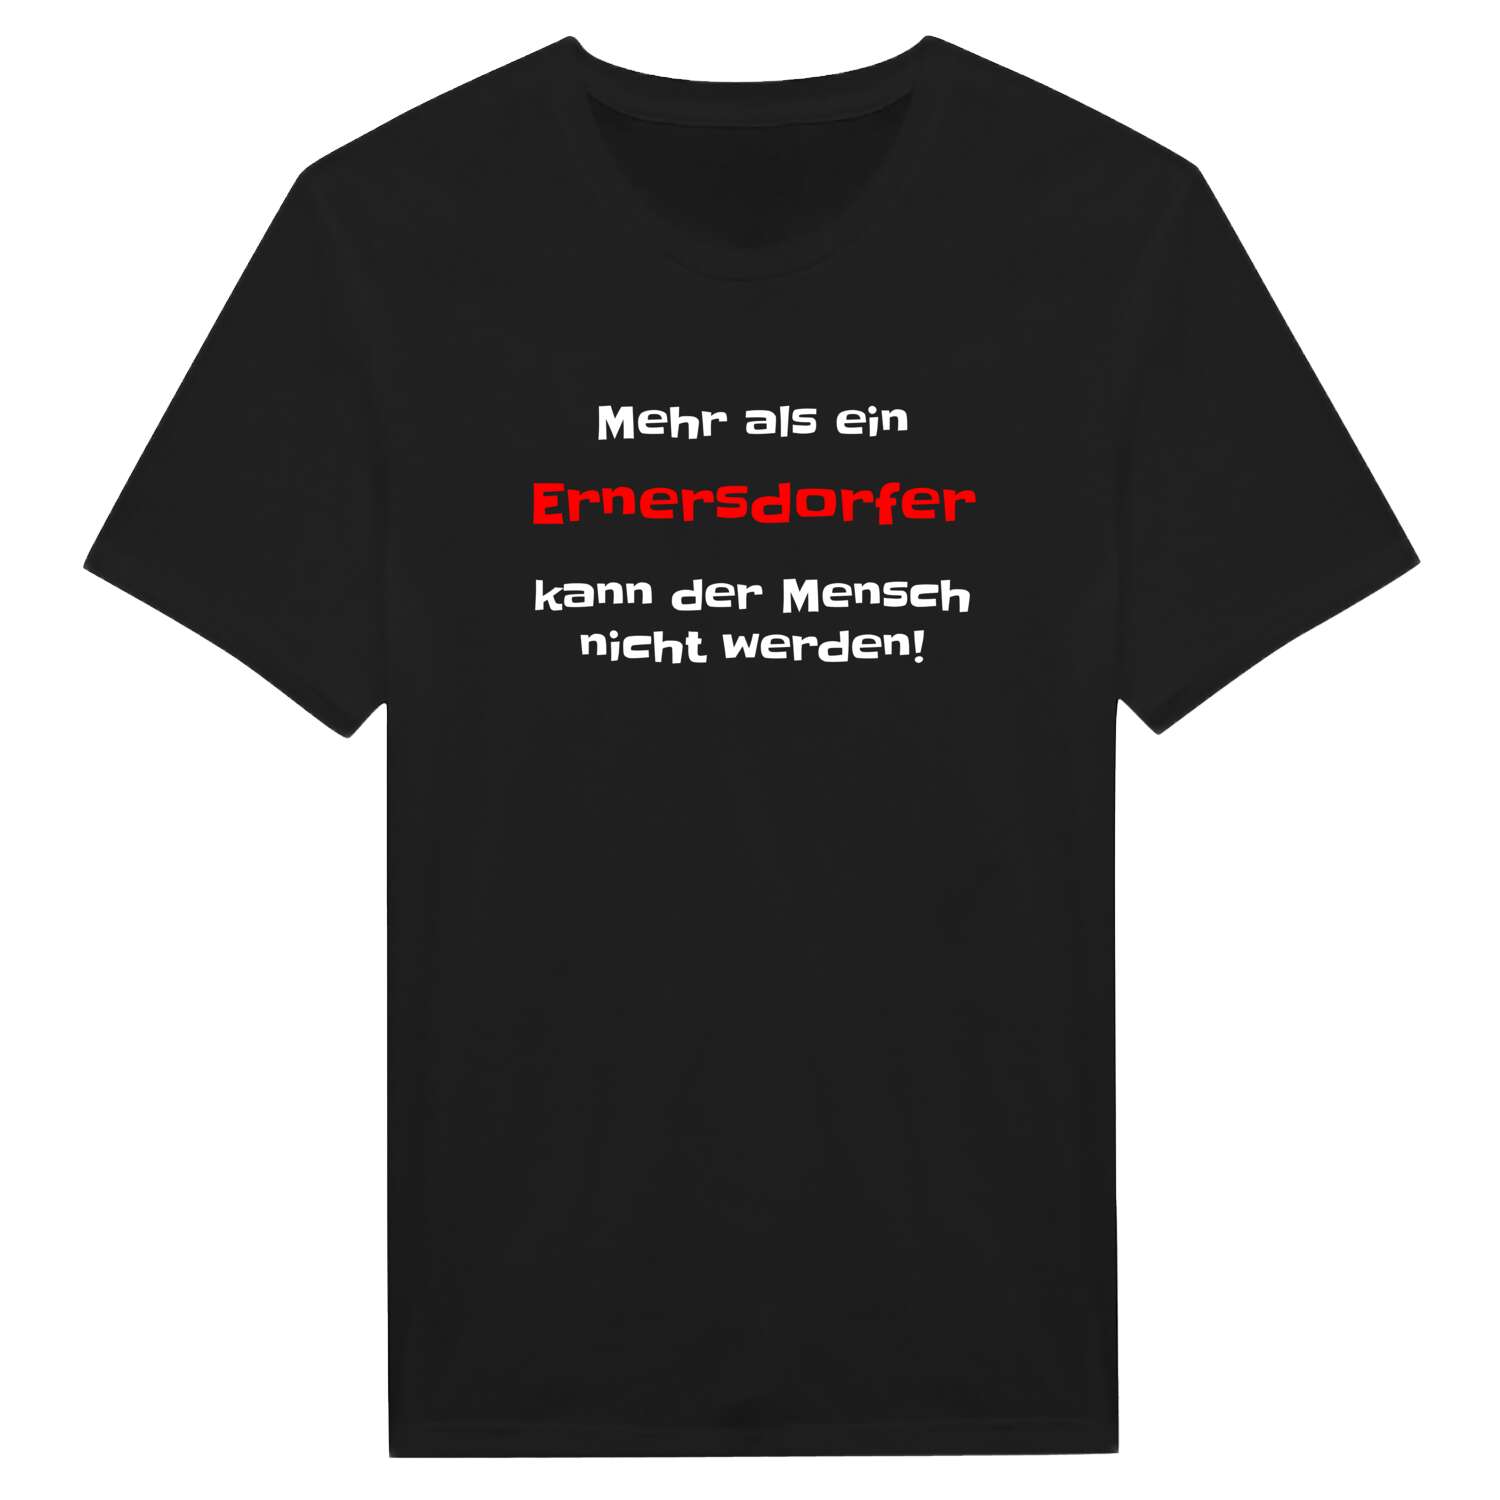 Ernersdorf T-Shirt »Mehr als ein«